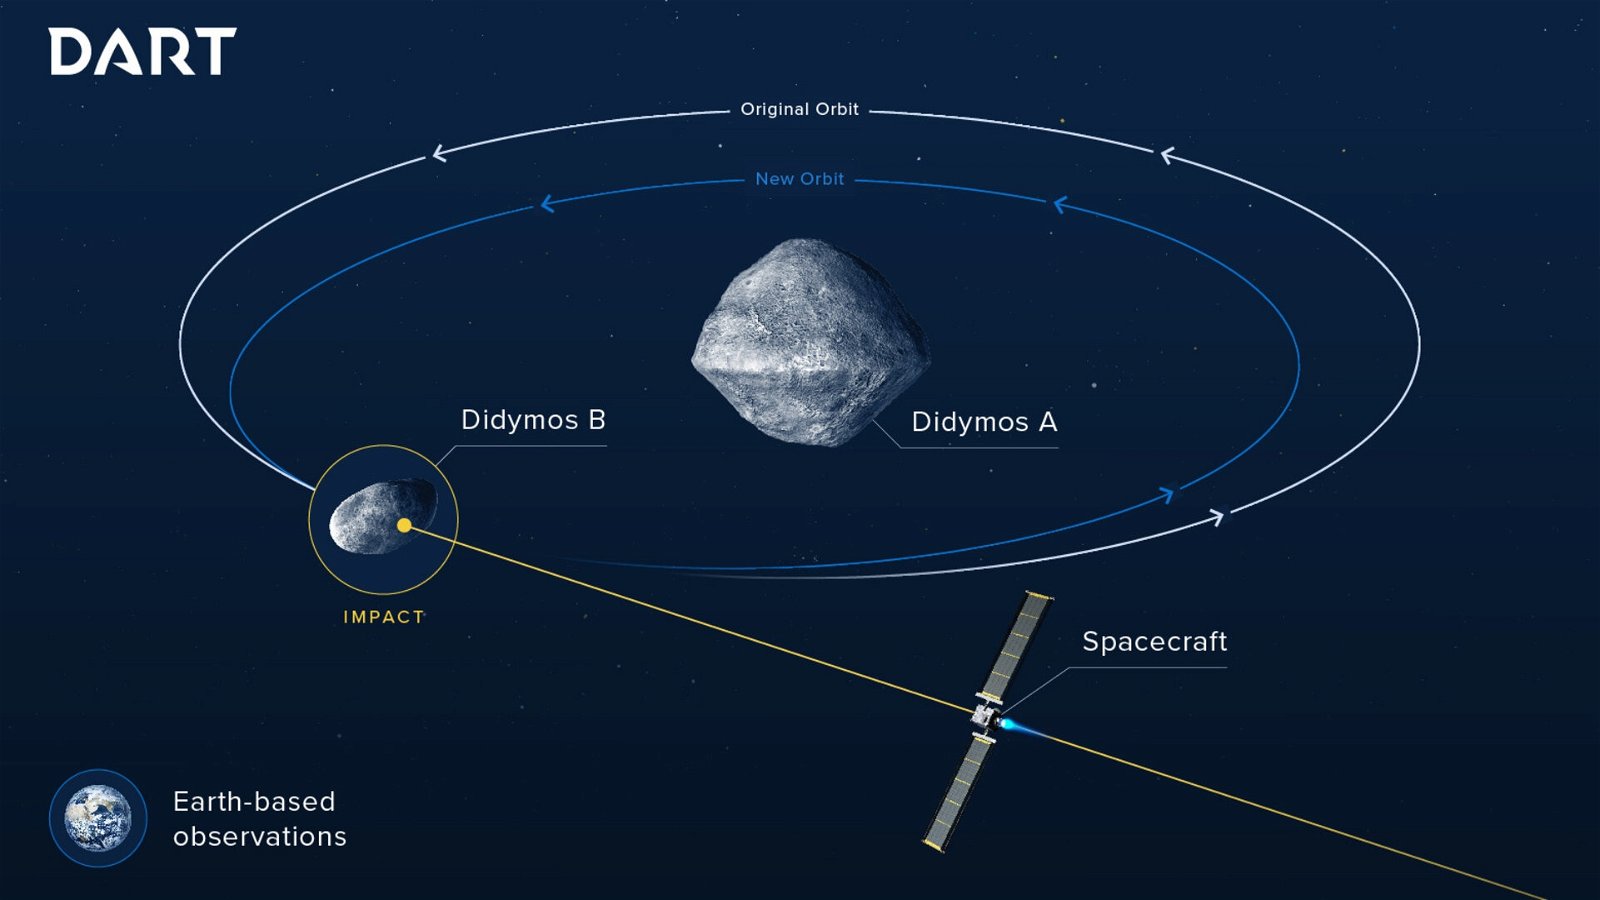 Qué haríamos si un asteroide se acercase a la Tierra, según la Agencia Espacial Europea